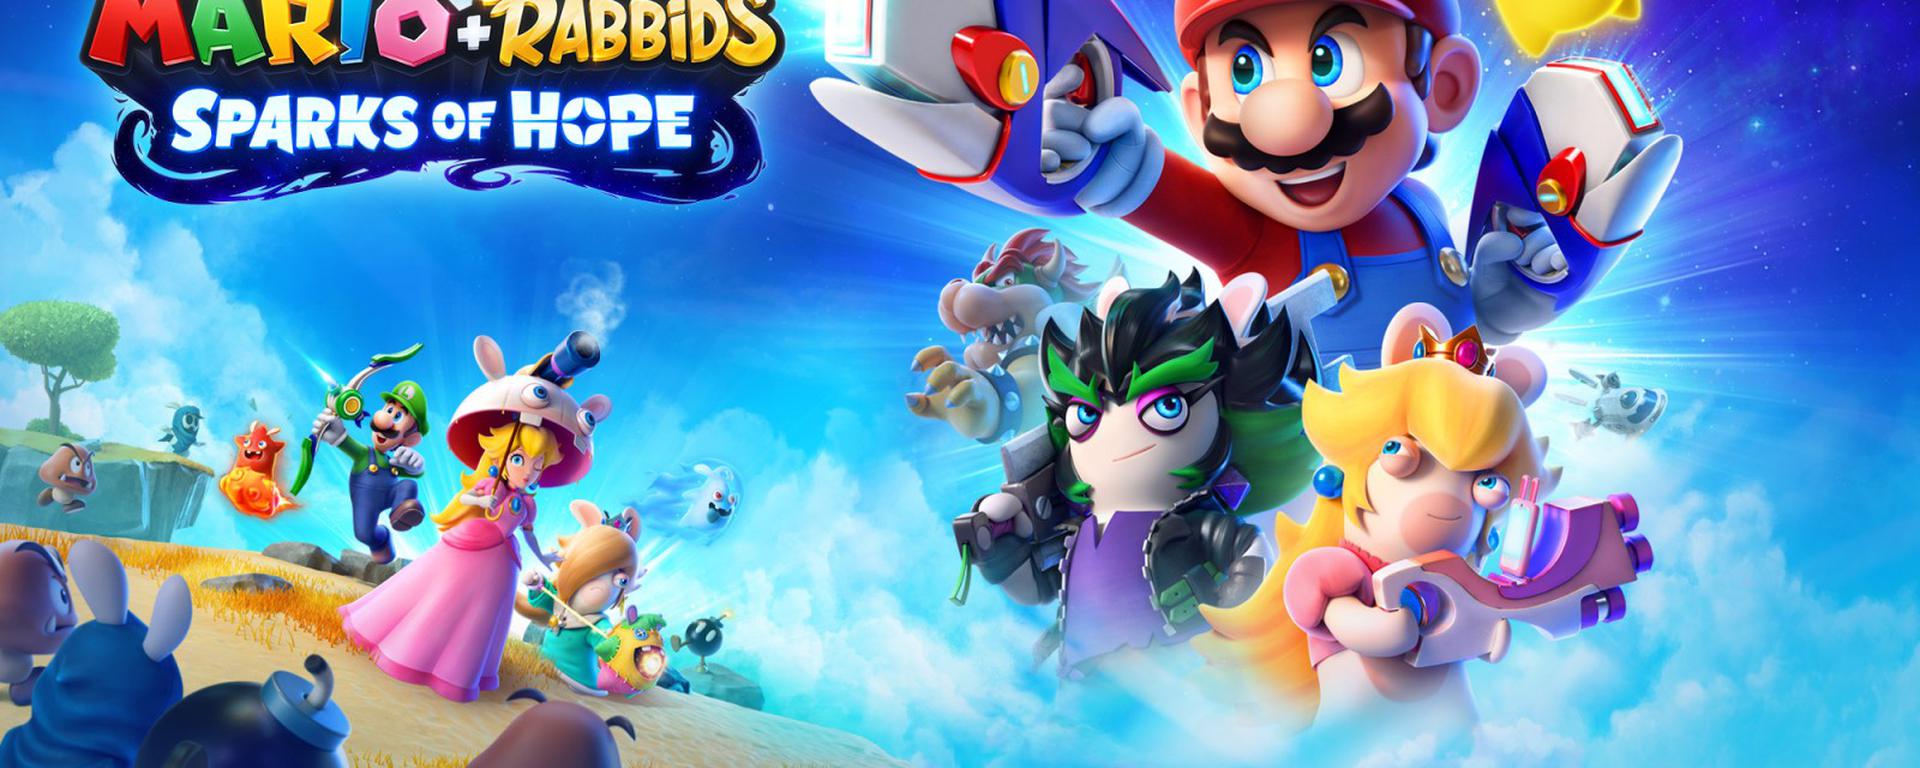 Mario + Rabbids Sparks of Hope: puntos a favor y en contra del juego de Mario hecho por Ubisoft